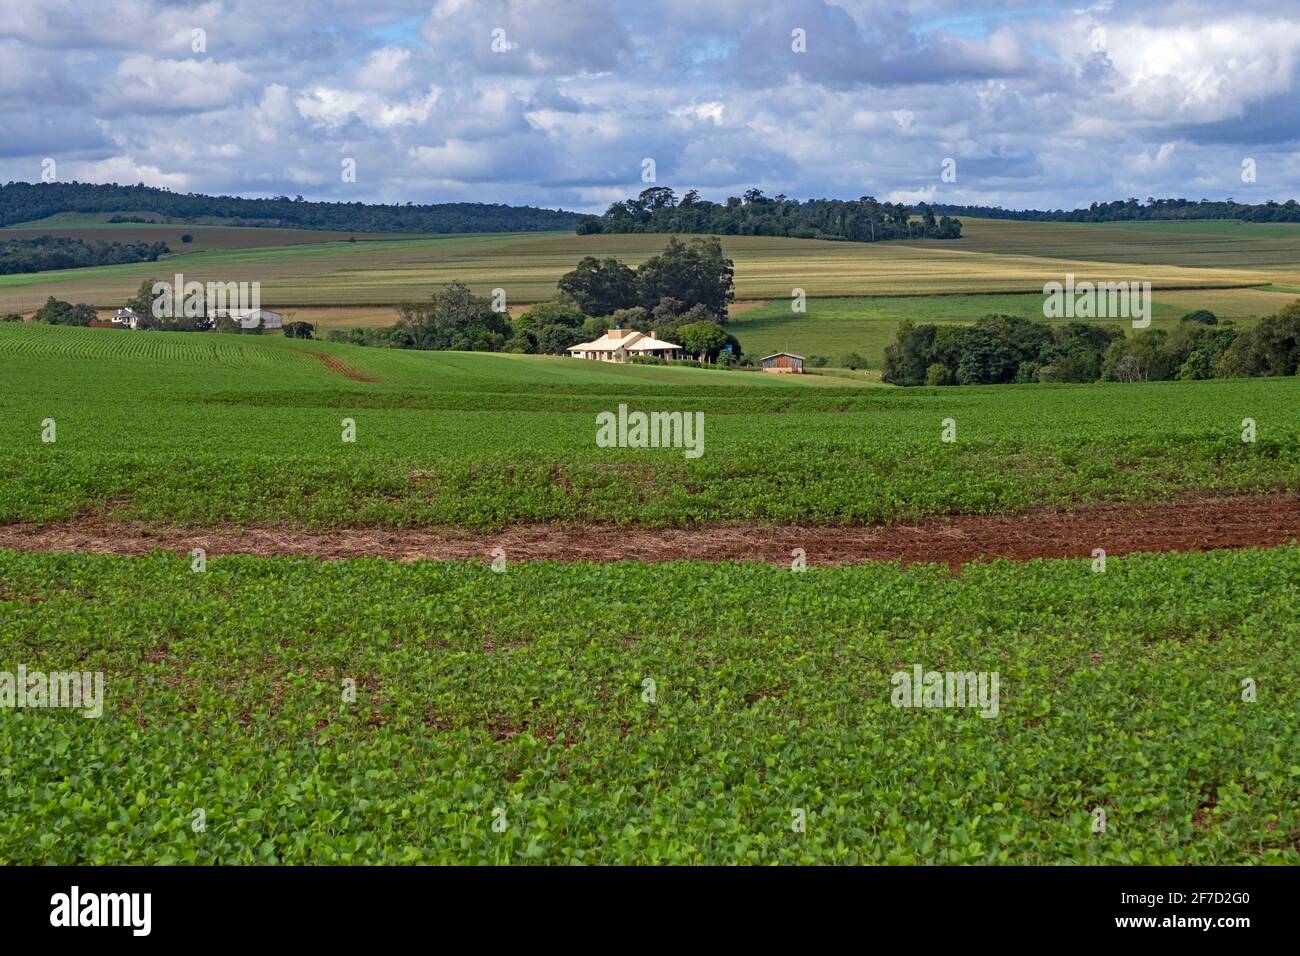 Ferme et champ de soja pour la production de soja / soja dans la campagne rurale d'Itapua, Paraguay Banque D'Images